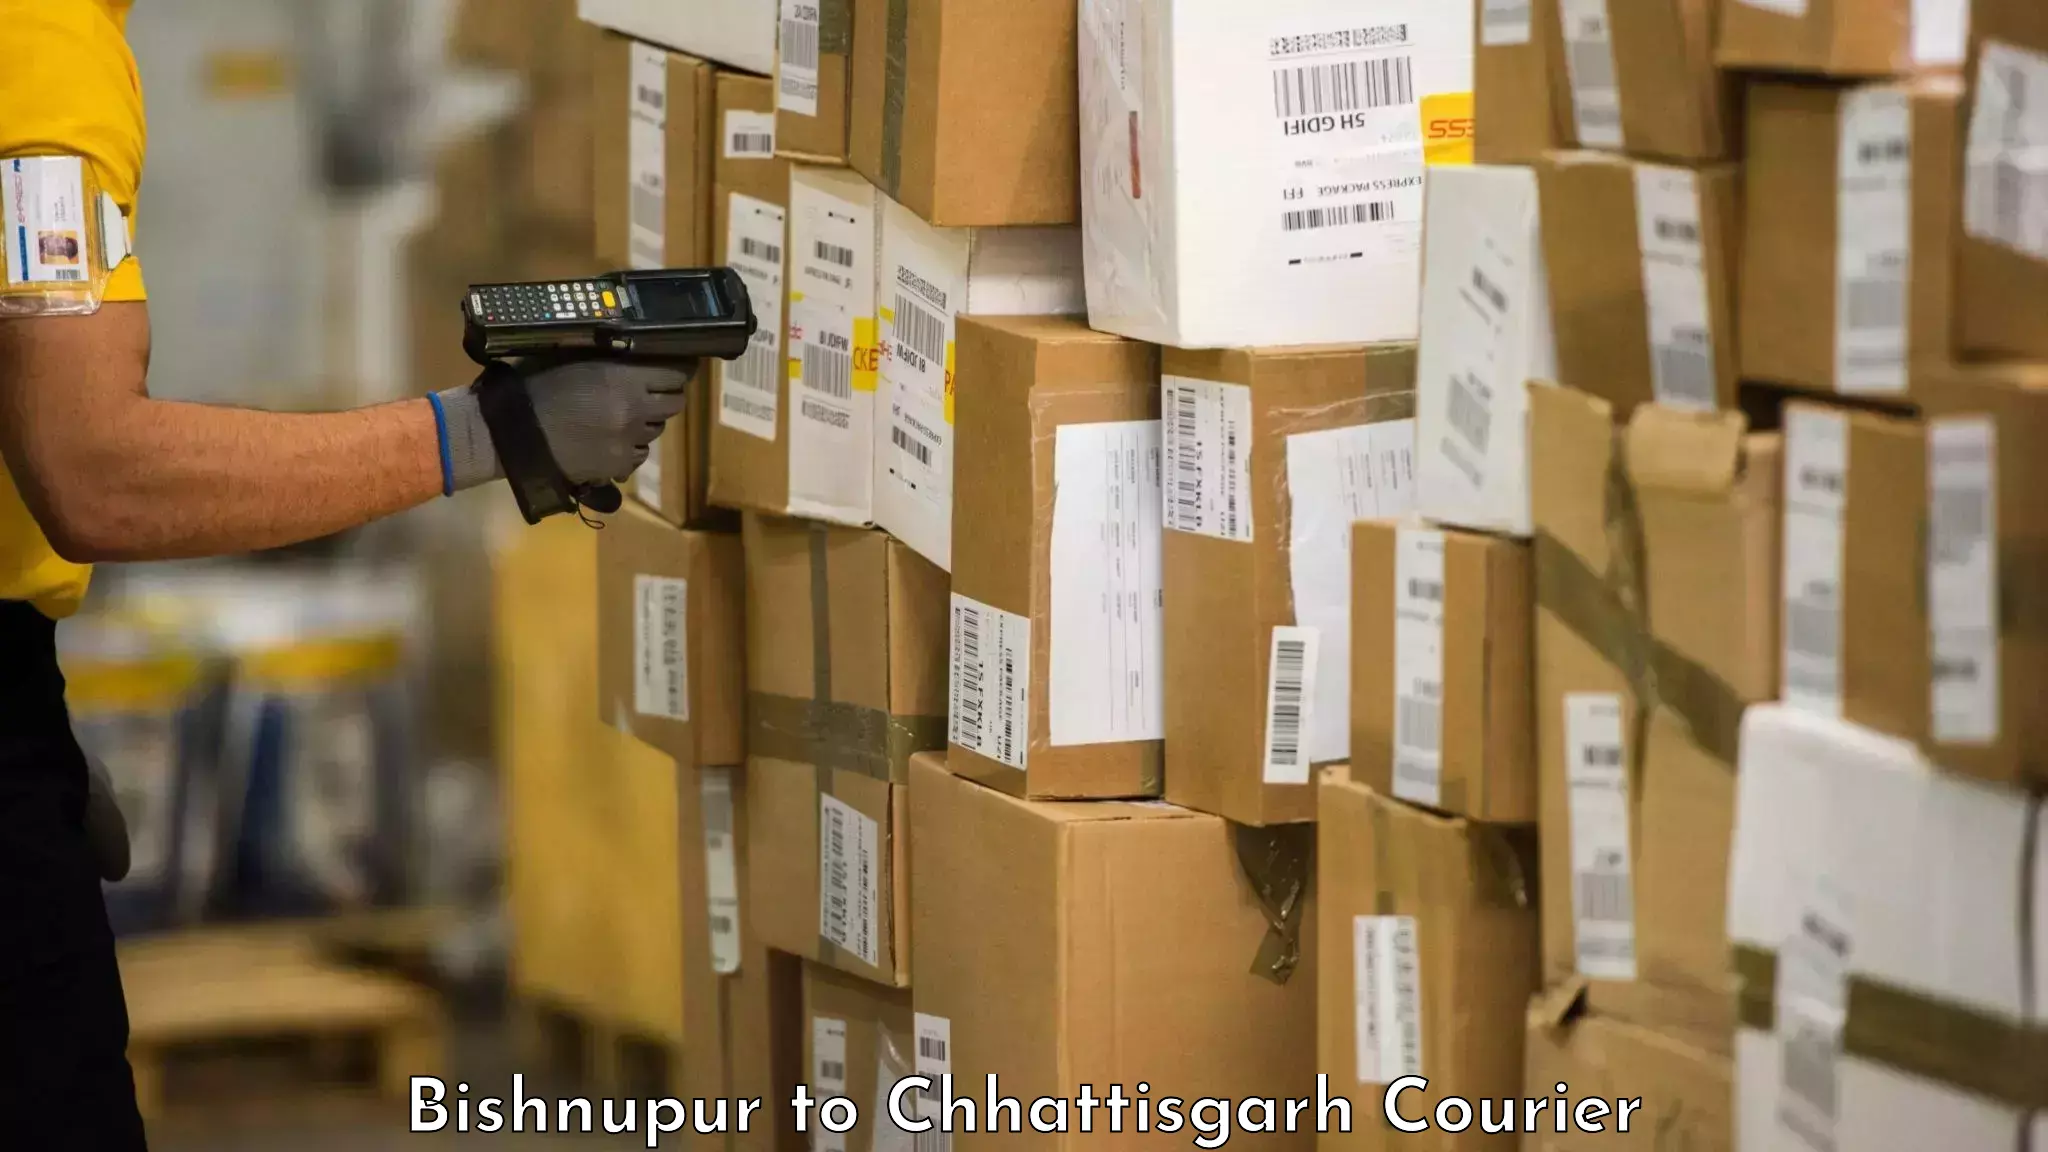 Baggage delivery estimate Bishnupur to Patna Chhattisgarh